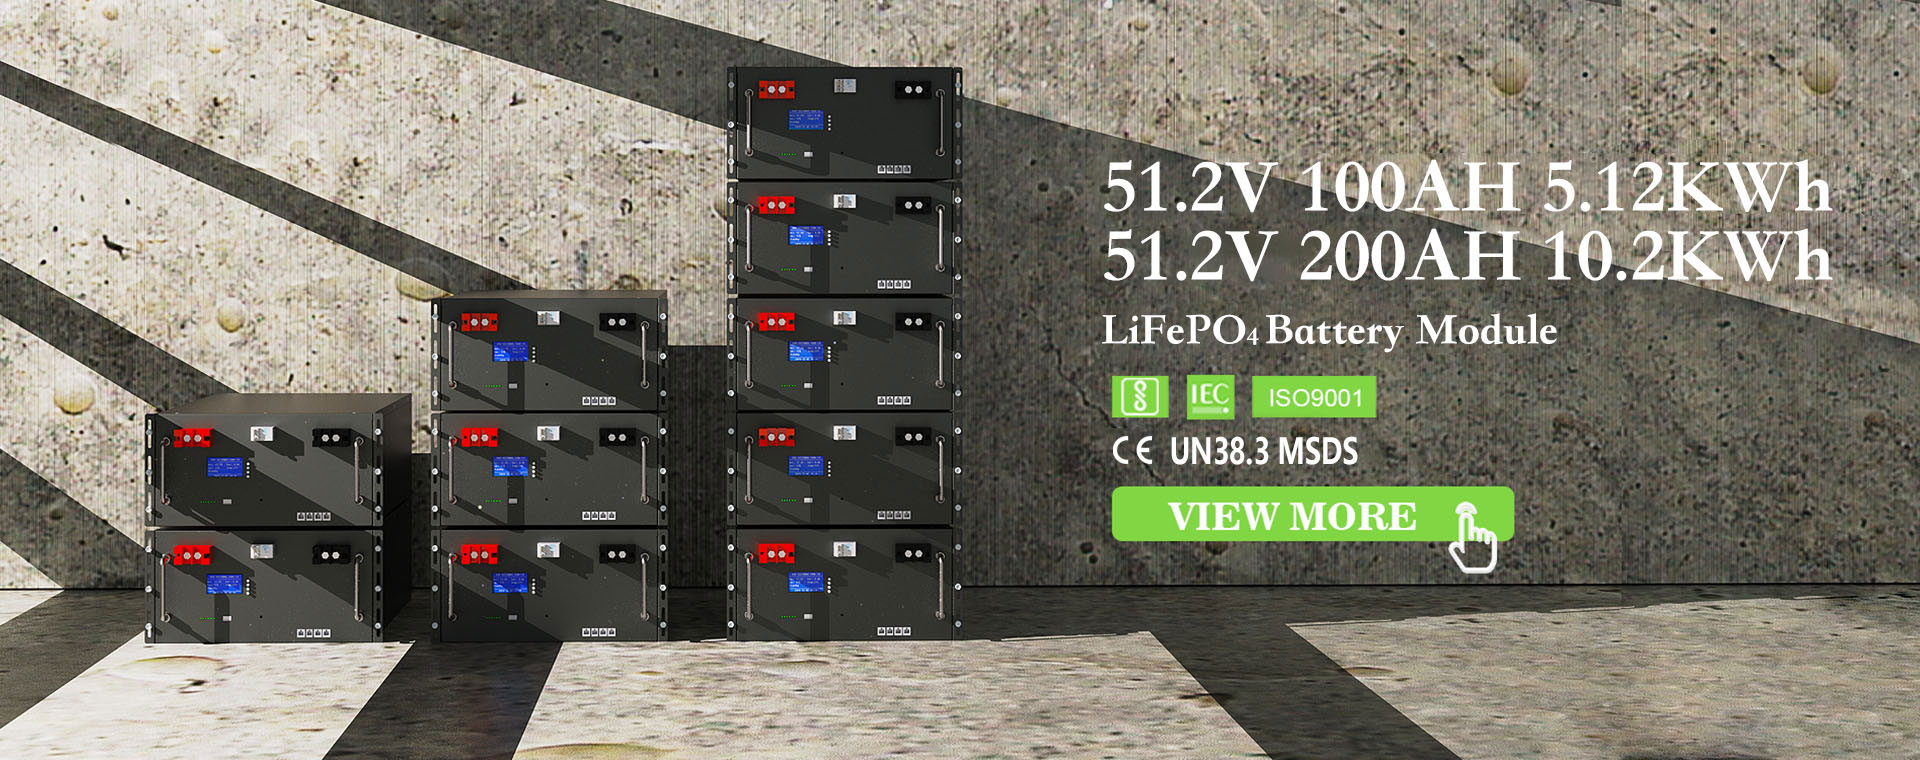 server rack mount battery